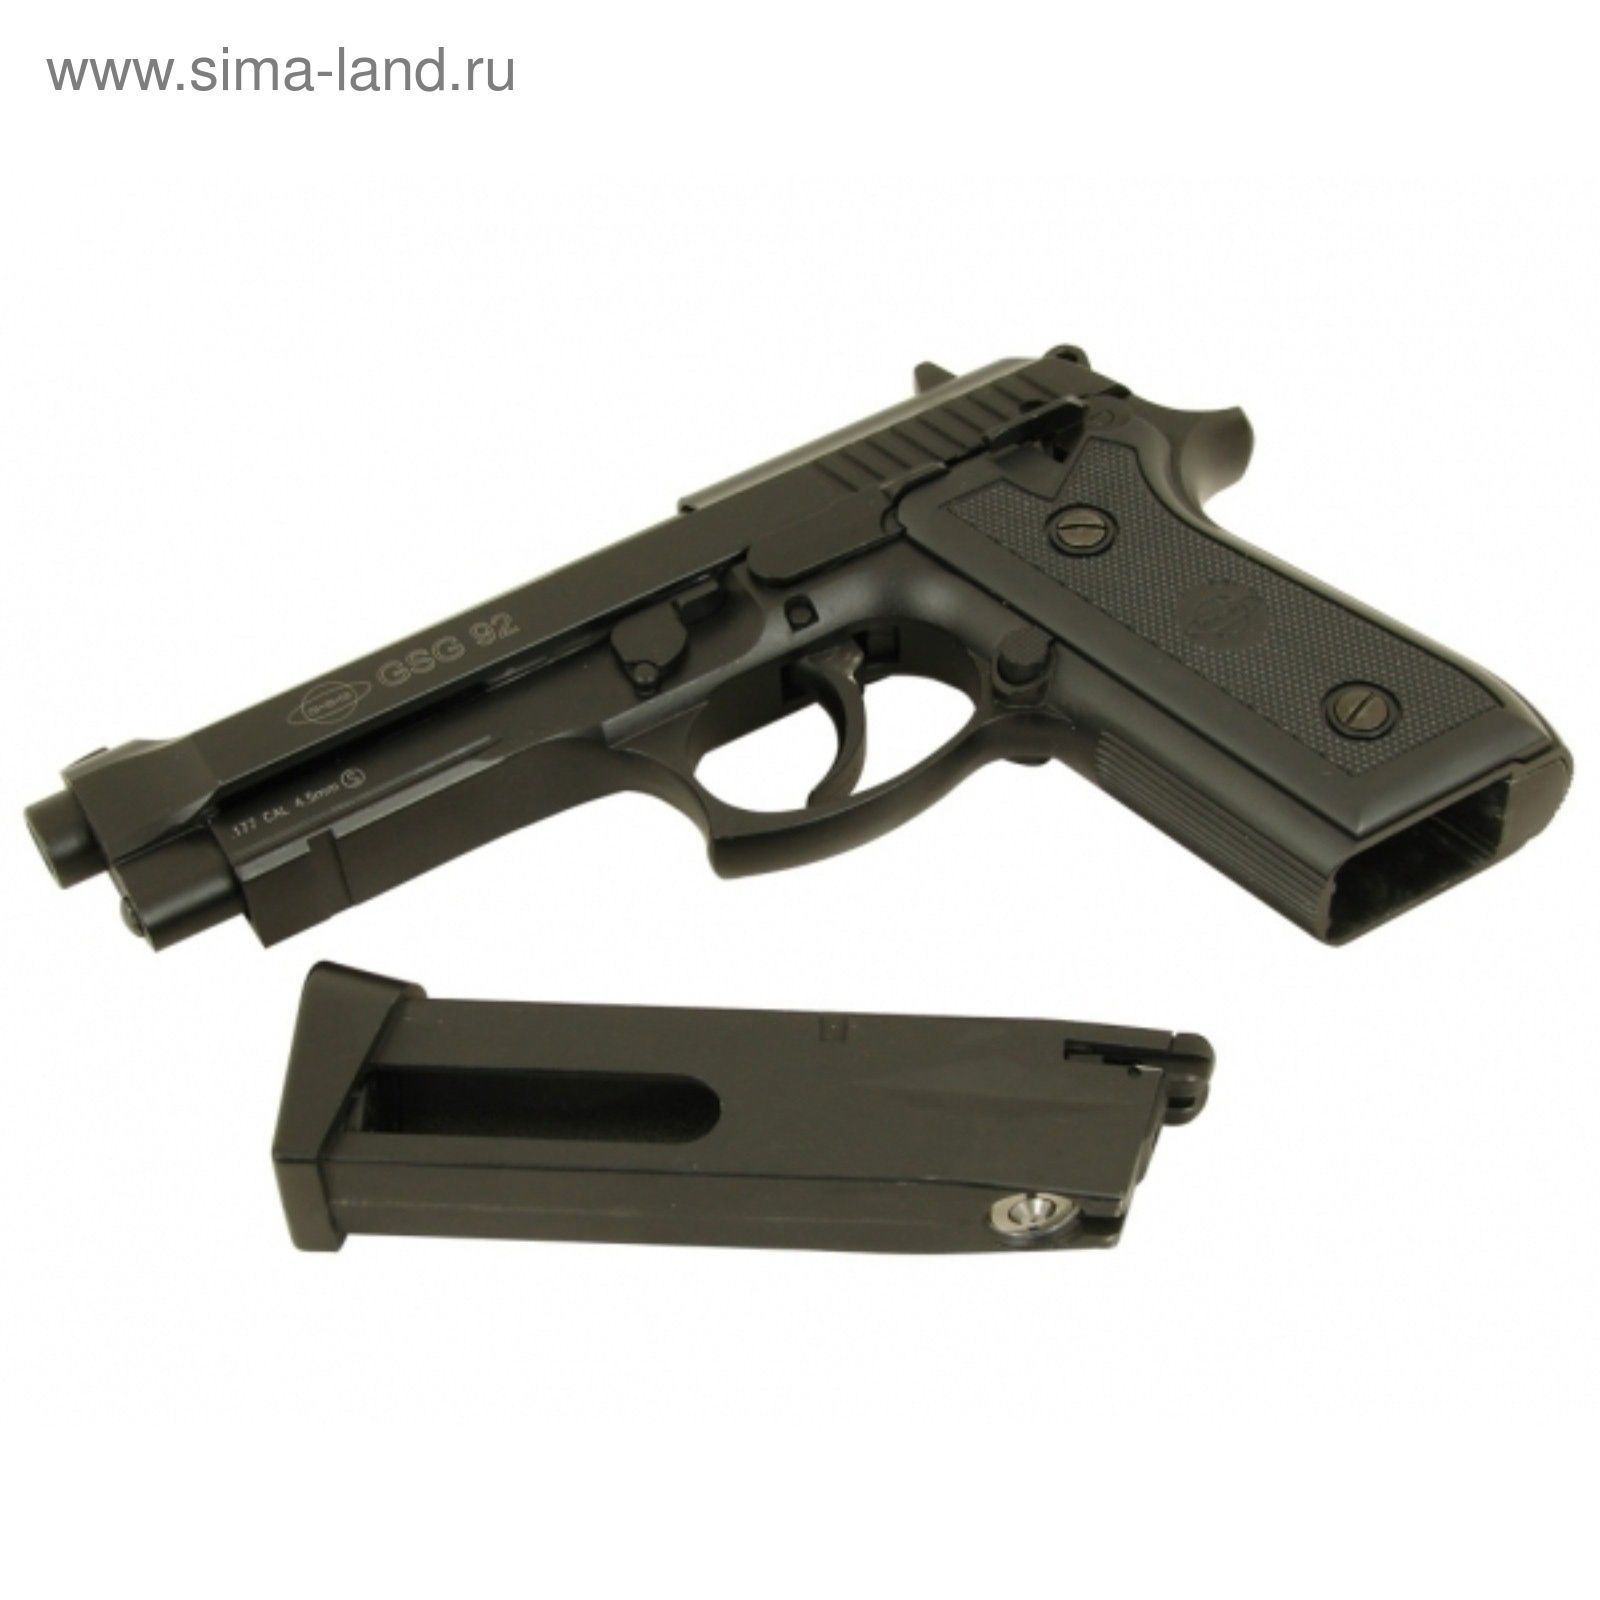 Пистолет пневматический GSG-92 (Beretta 92), к.4,5 мм, металл, блоубэк, черный, 95 м/с